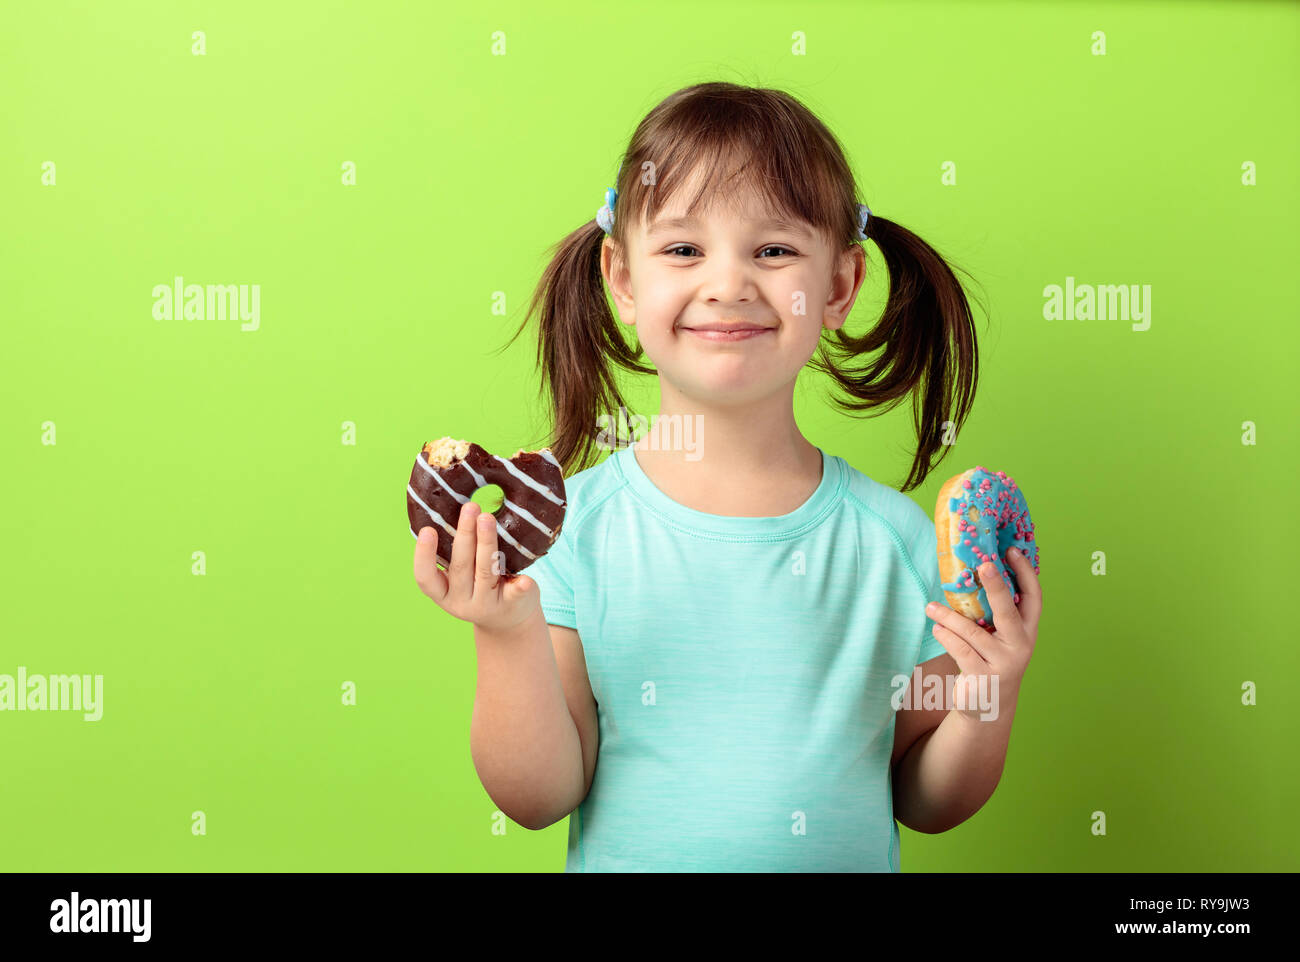 Glückliches Mädchen in einem türkis-t-shirt mit Donuts. Grüner Hintergrund. Kopieren Sie Platz. Stockfoto